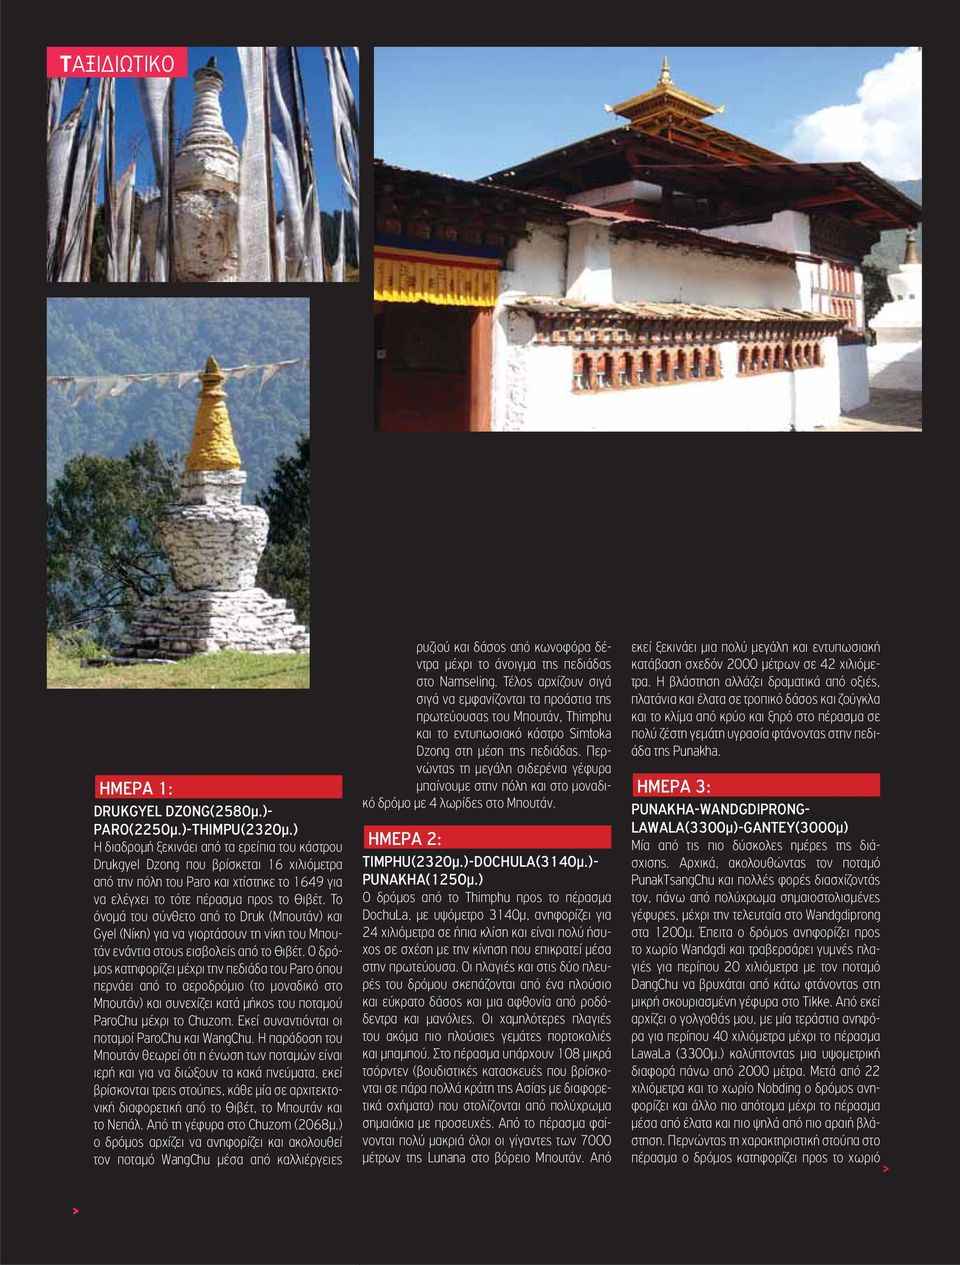 Το όνομά του σύνθετο από το Druk (Μπουτάν) και Gyel (Νίκη) για να γιορτάσουν τη νίκη του Μπουτάν ενάντια στους εισβολείς από το Θιβέτ.